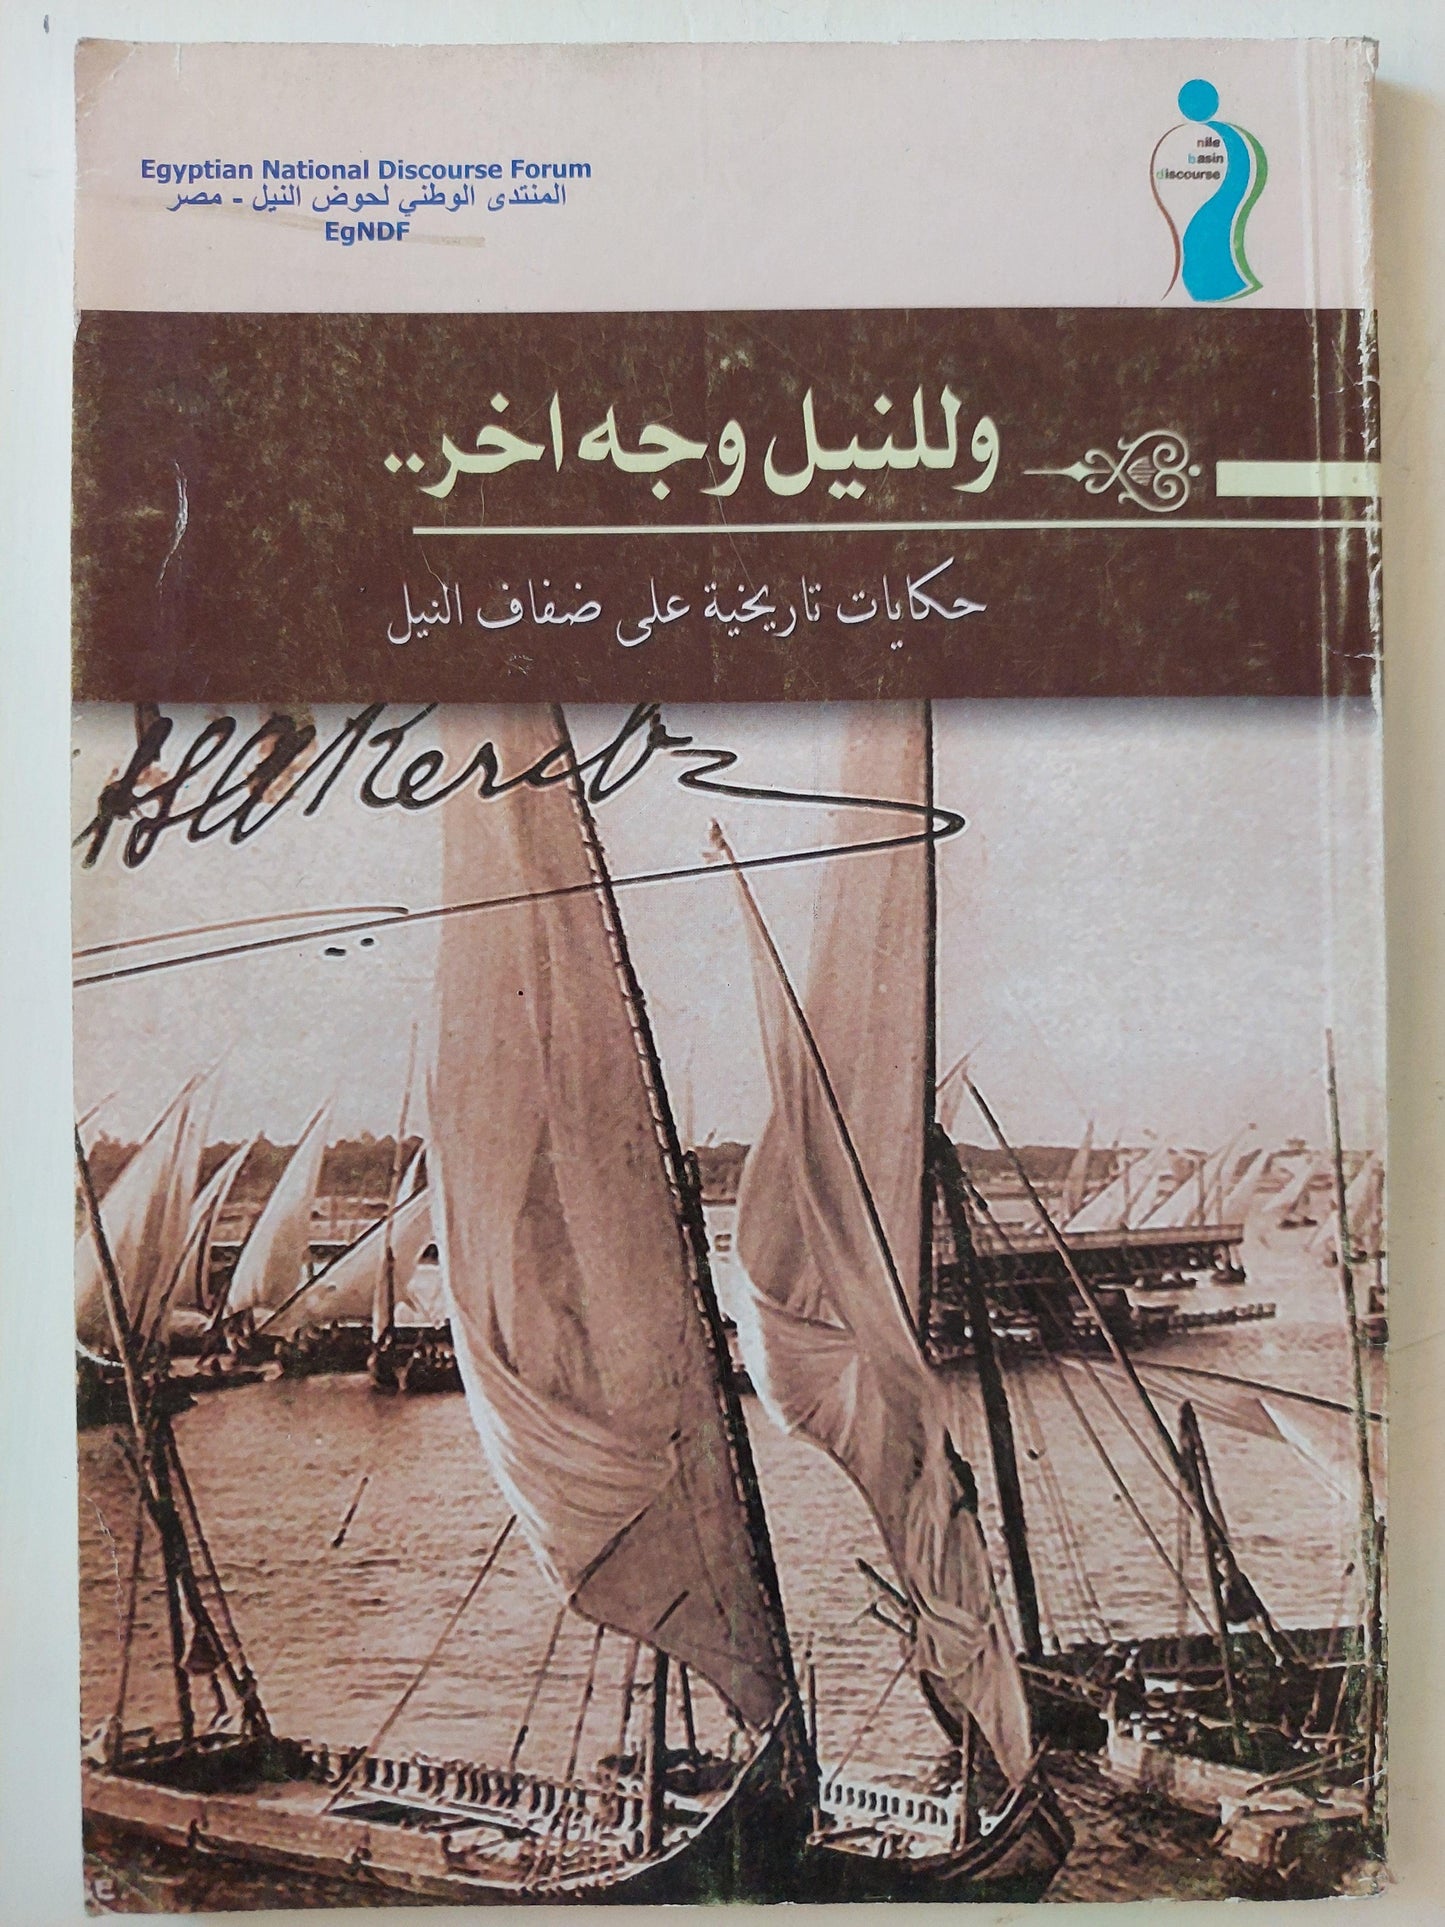 وللنيل وجه اخر : حكايات تاريخية علي ضفاف النيل / ملحق خاص بالصور - متجر كتب مصر